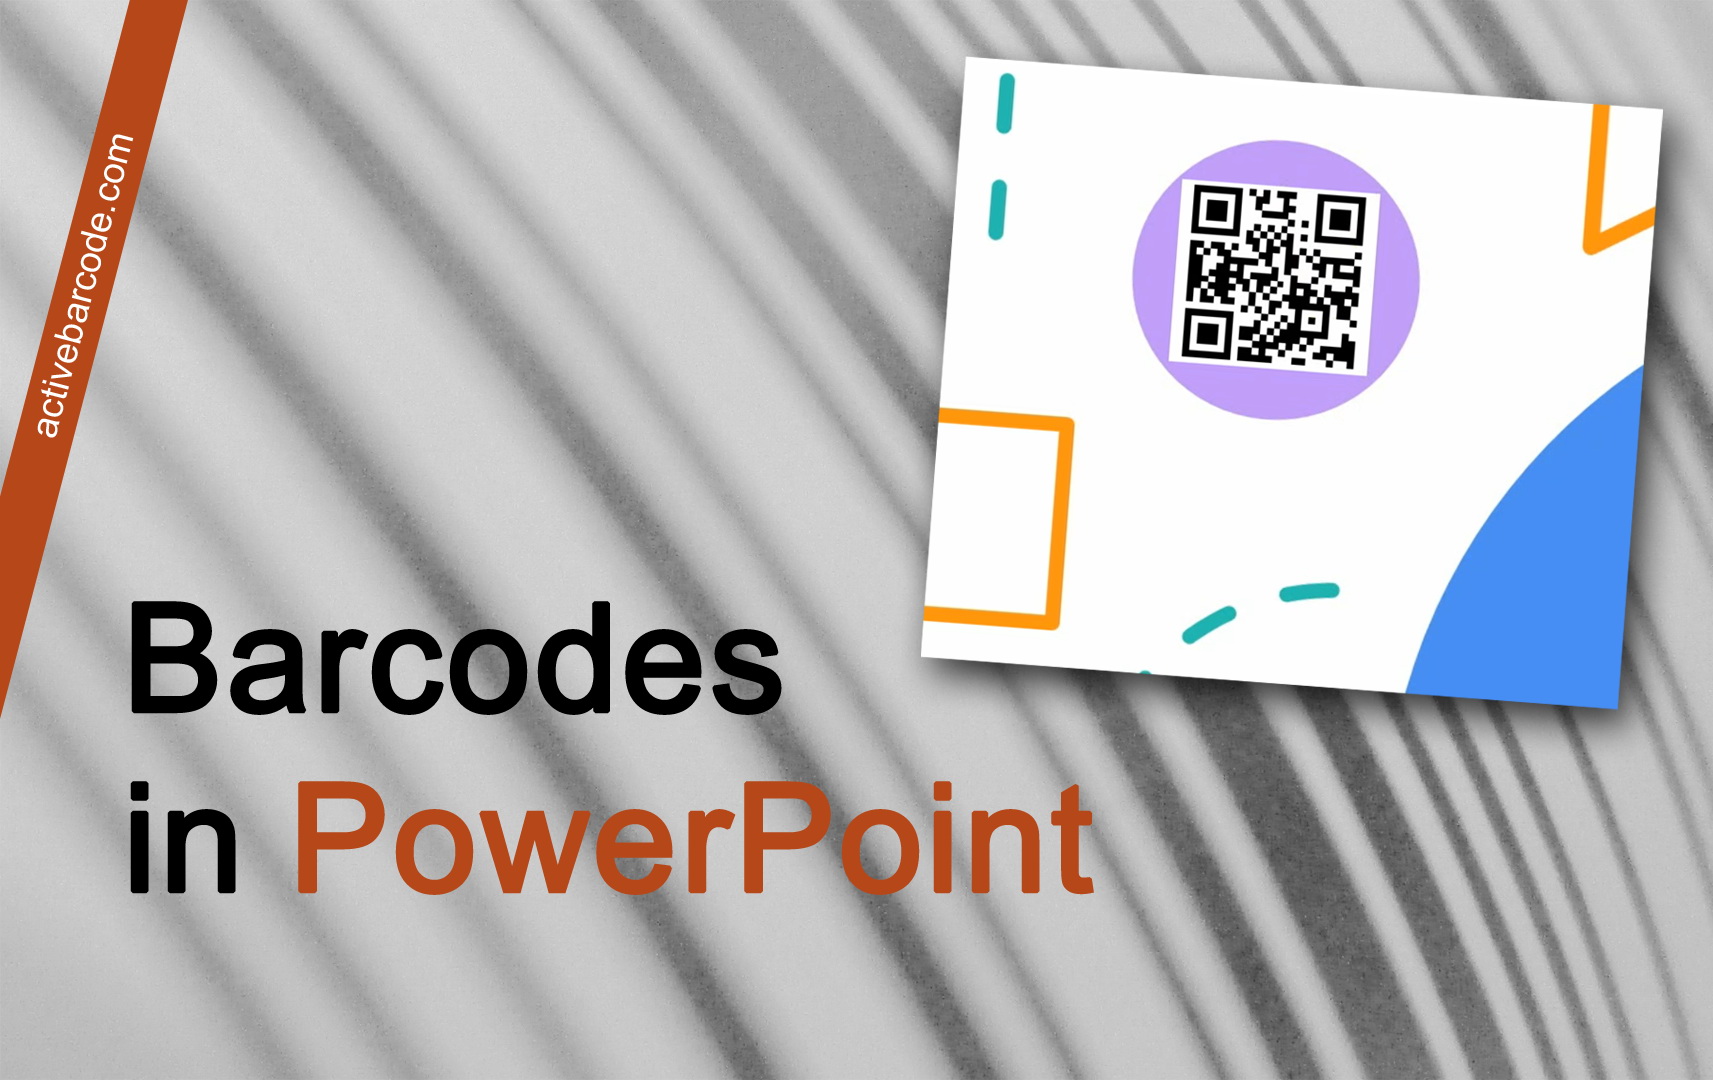 ActiveBarcode: Come incorporare un codice a barre in una presentazione PowerPoint utilizzando l'Add-In